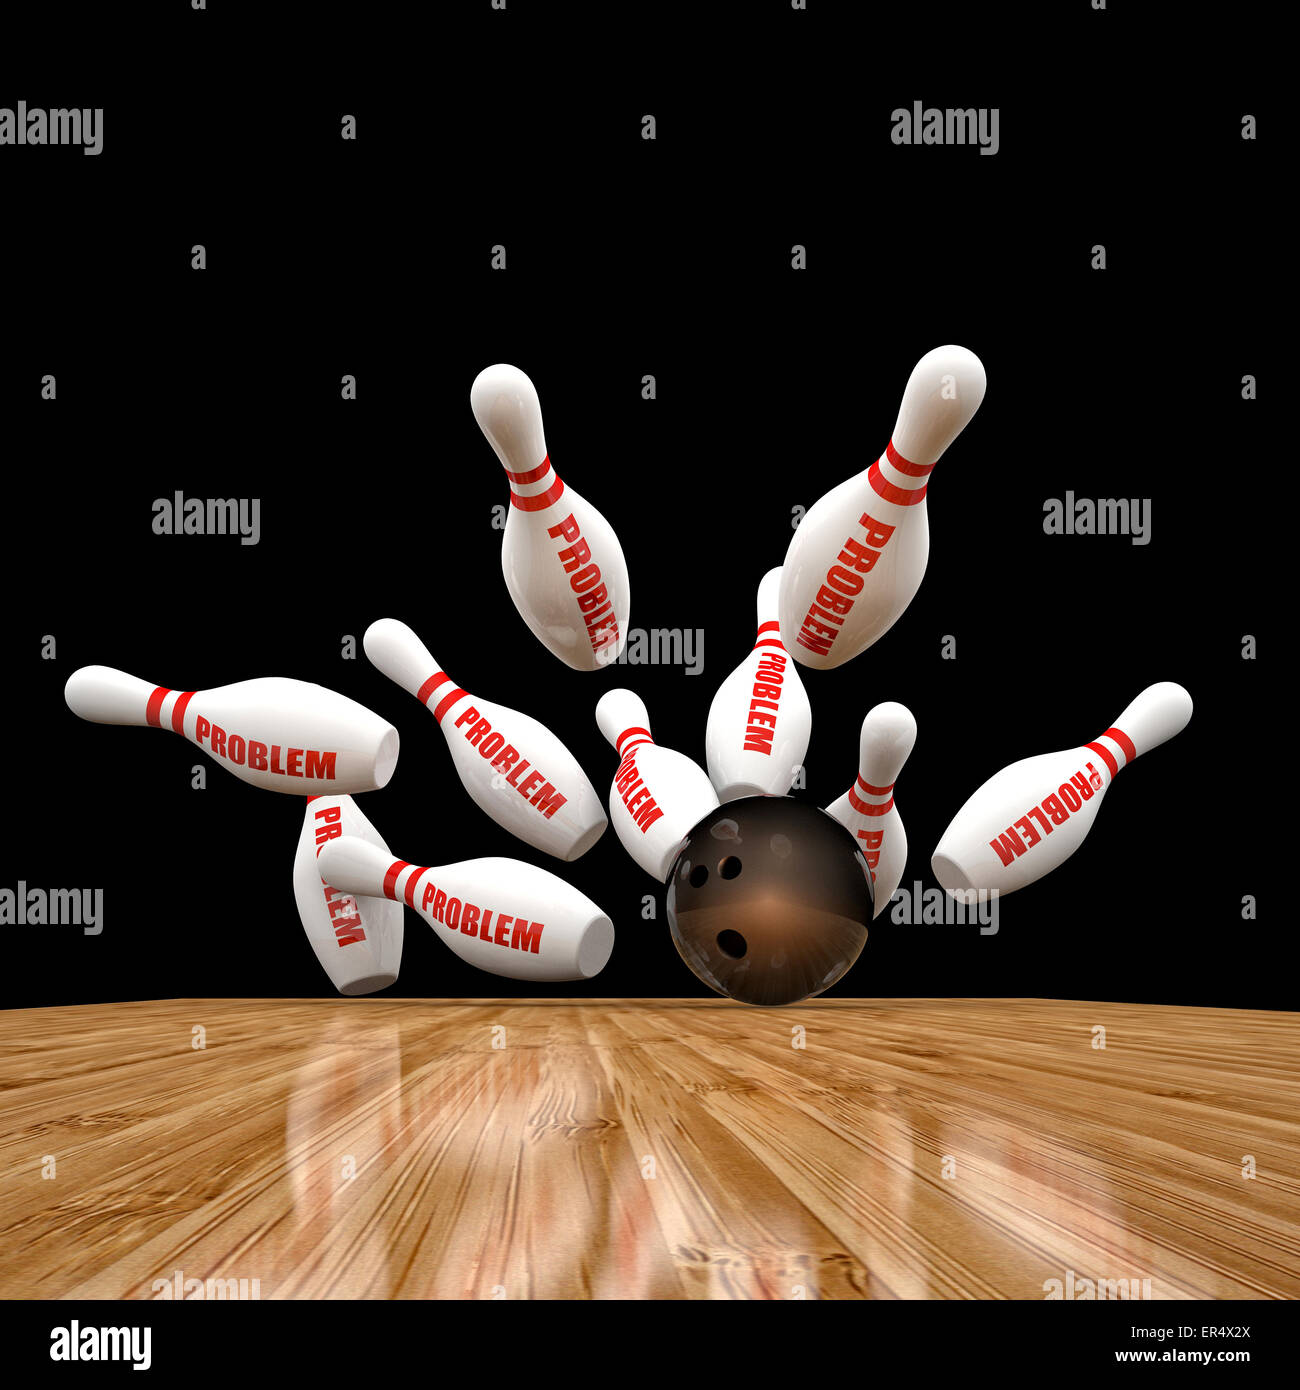 Bowling-Kegel und Problem Texthintergrund Stockfoto